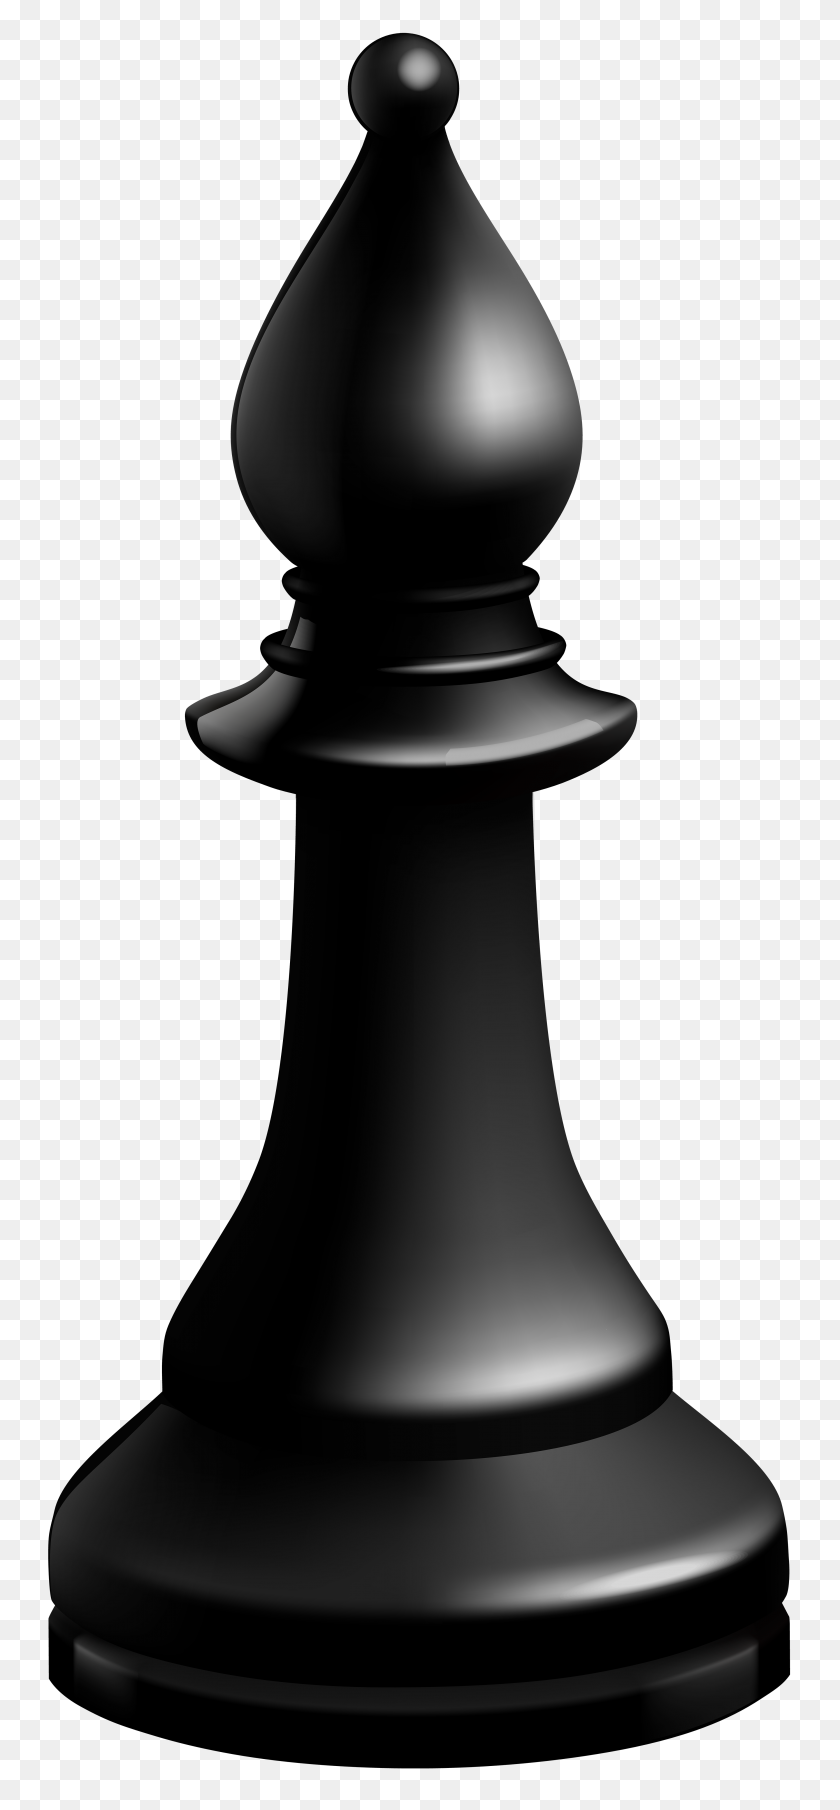 3564x8000 Епископ Черная Шахматная Фигура Png Картинки - Деревянная Ложка Клипарт Черный И Белый